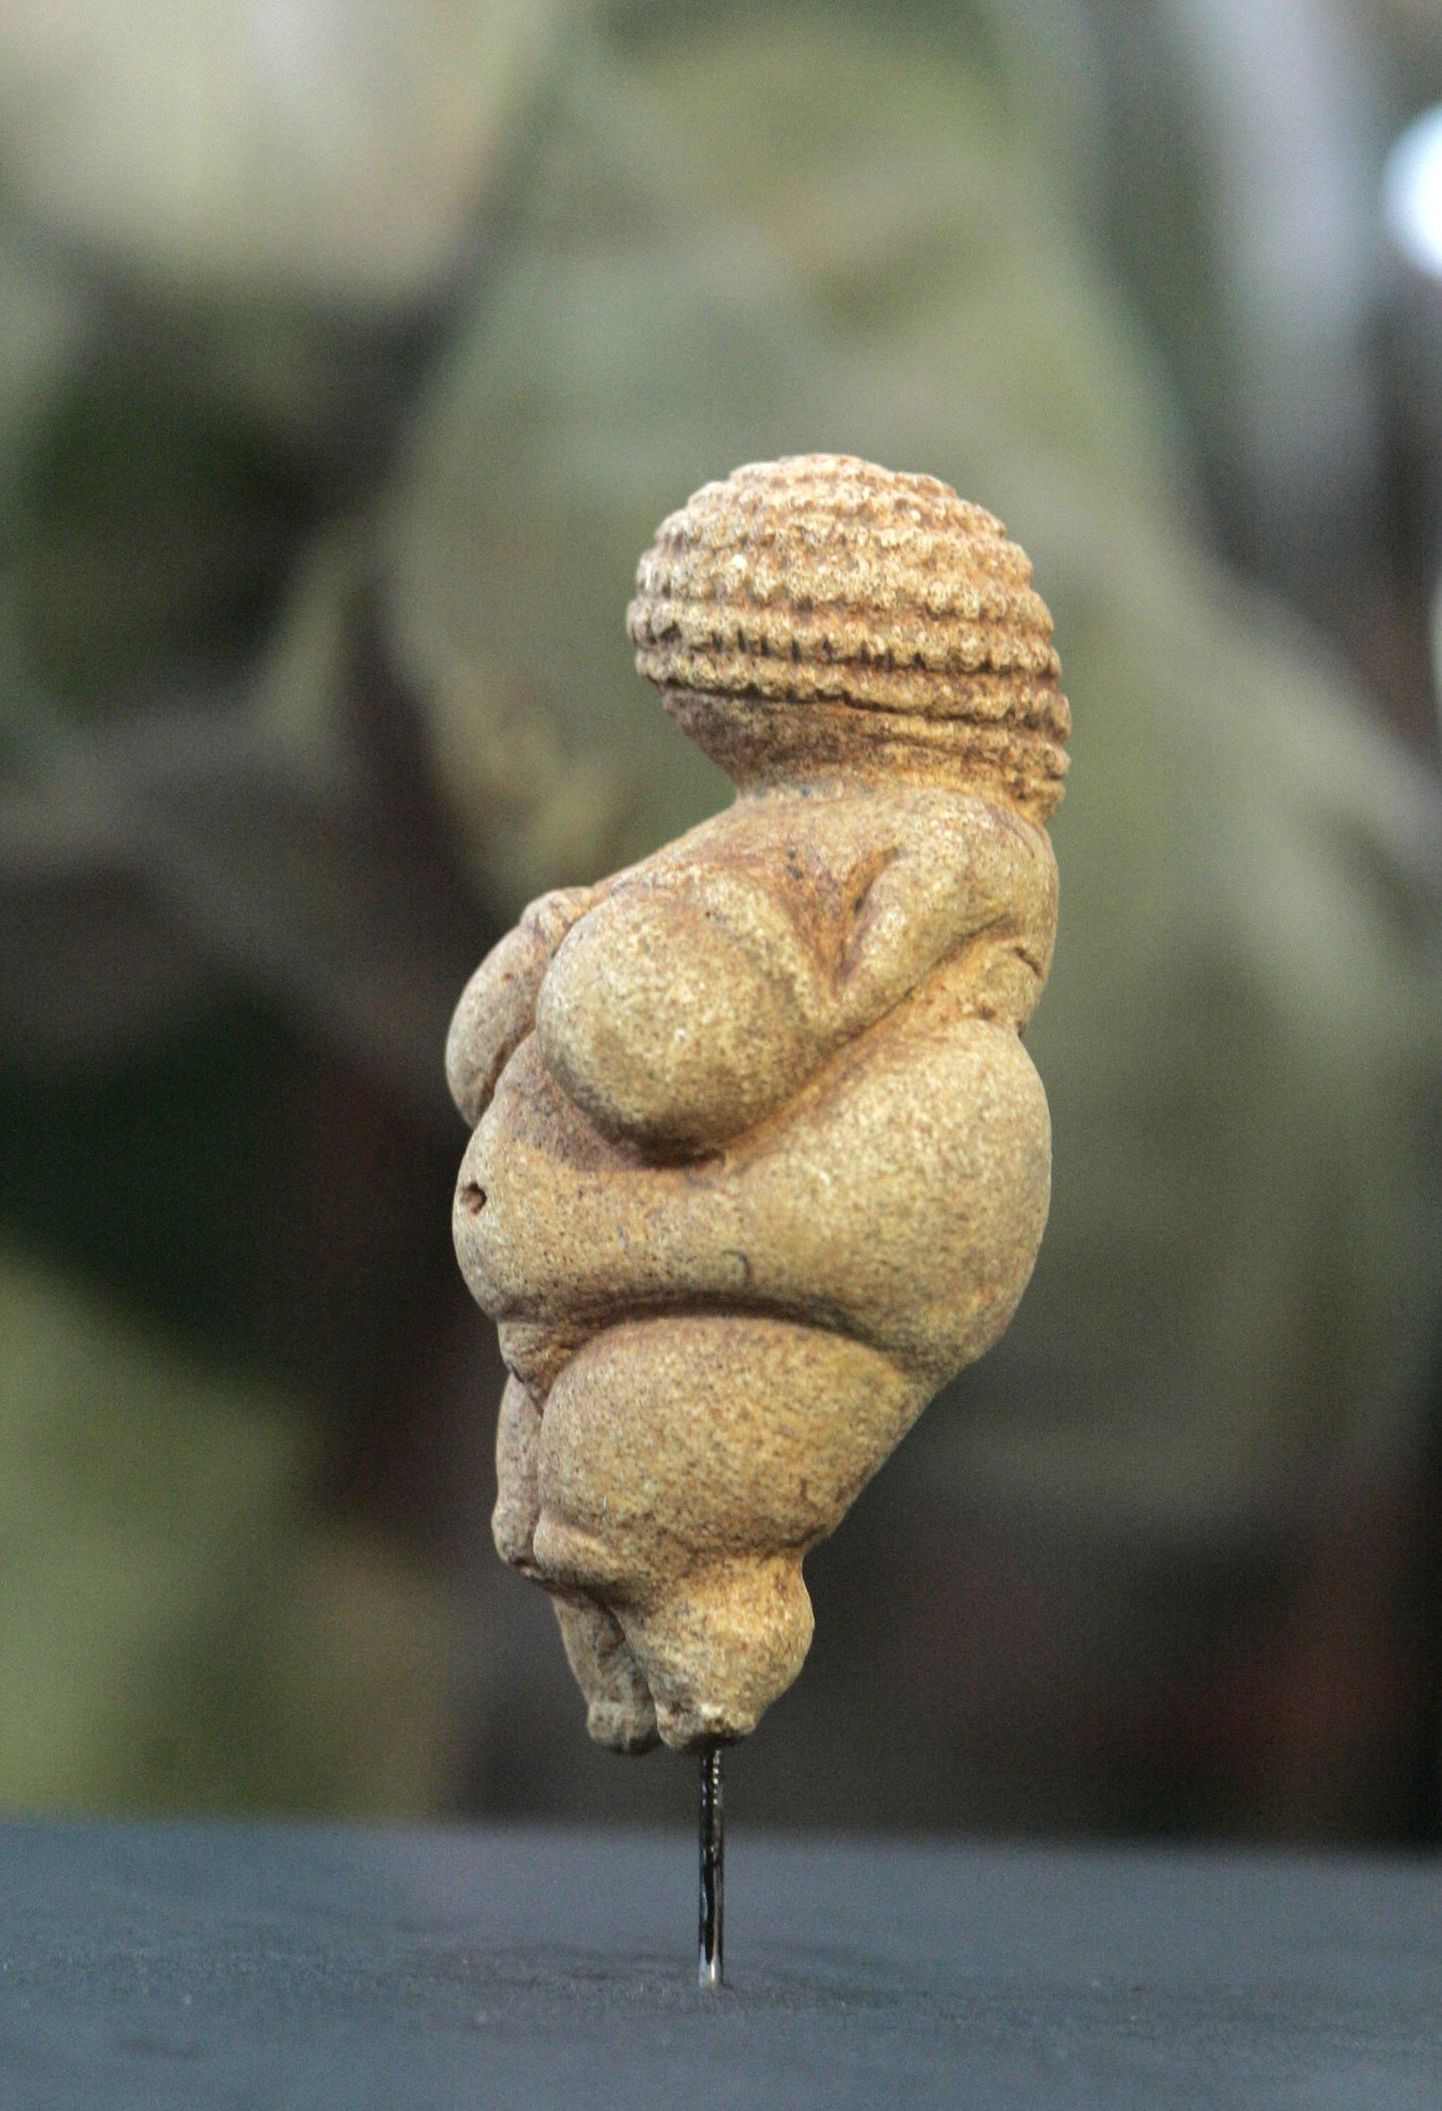 Kiviaja üks kuulsamaid kujusid - Willendorfi Veenus. Samalaadsed kujud leiti nüüd ka Venemaalt